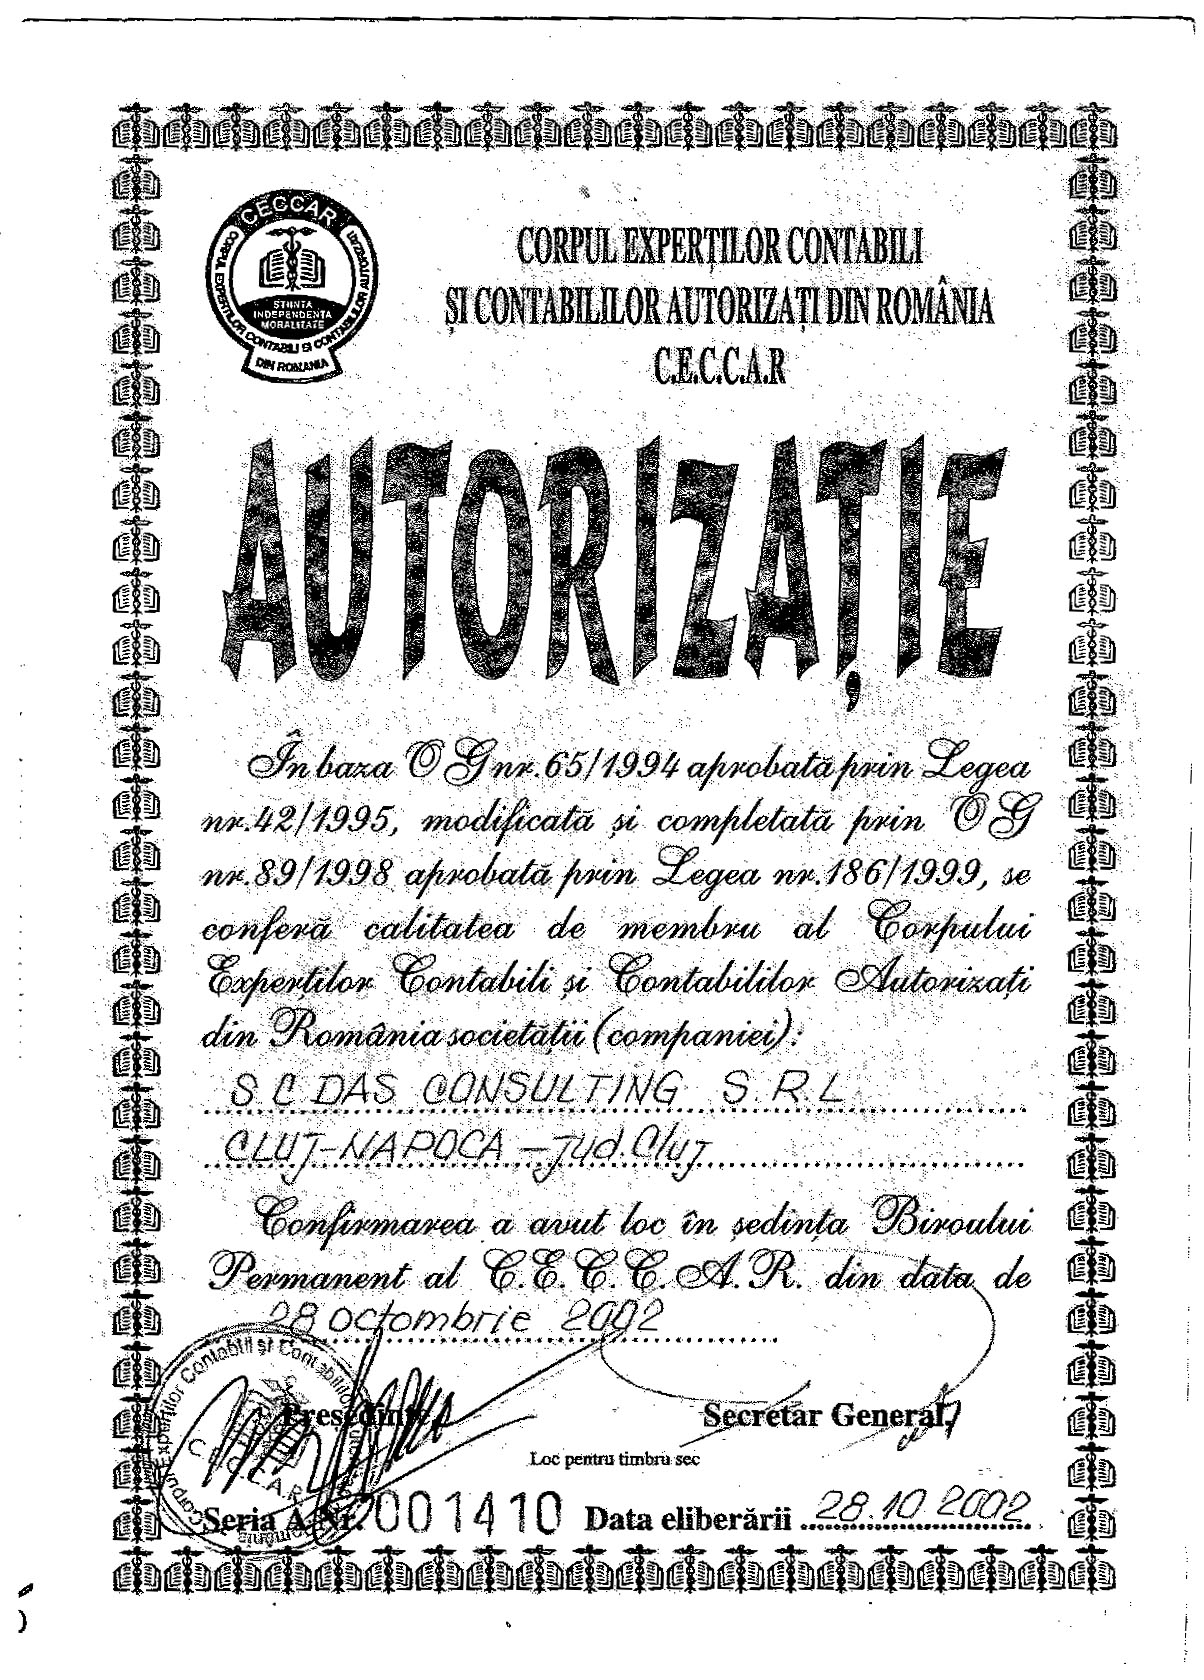 Certificat acreditare Corpul Expertilor Contabili si Contabililor Autorizati din Romania